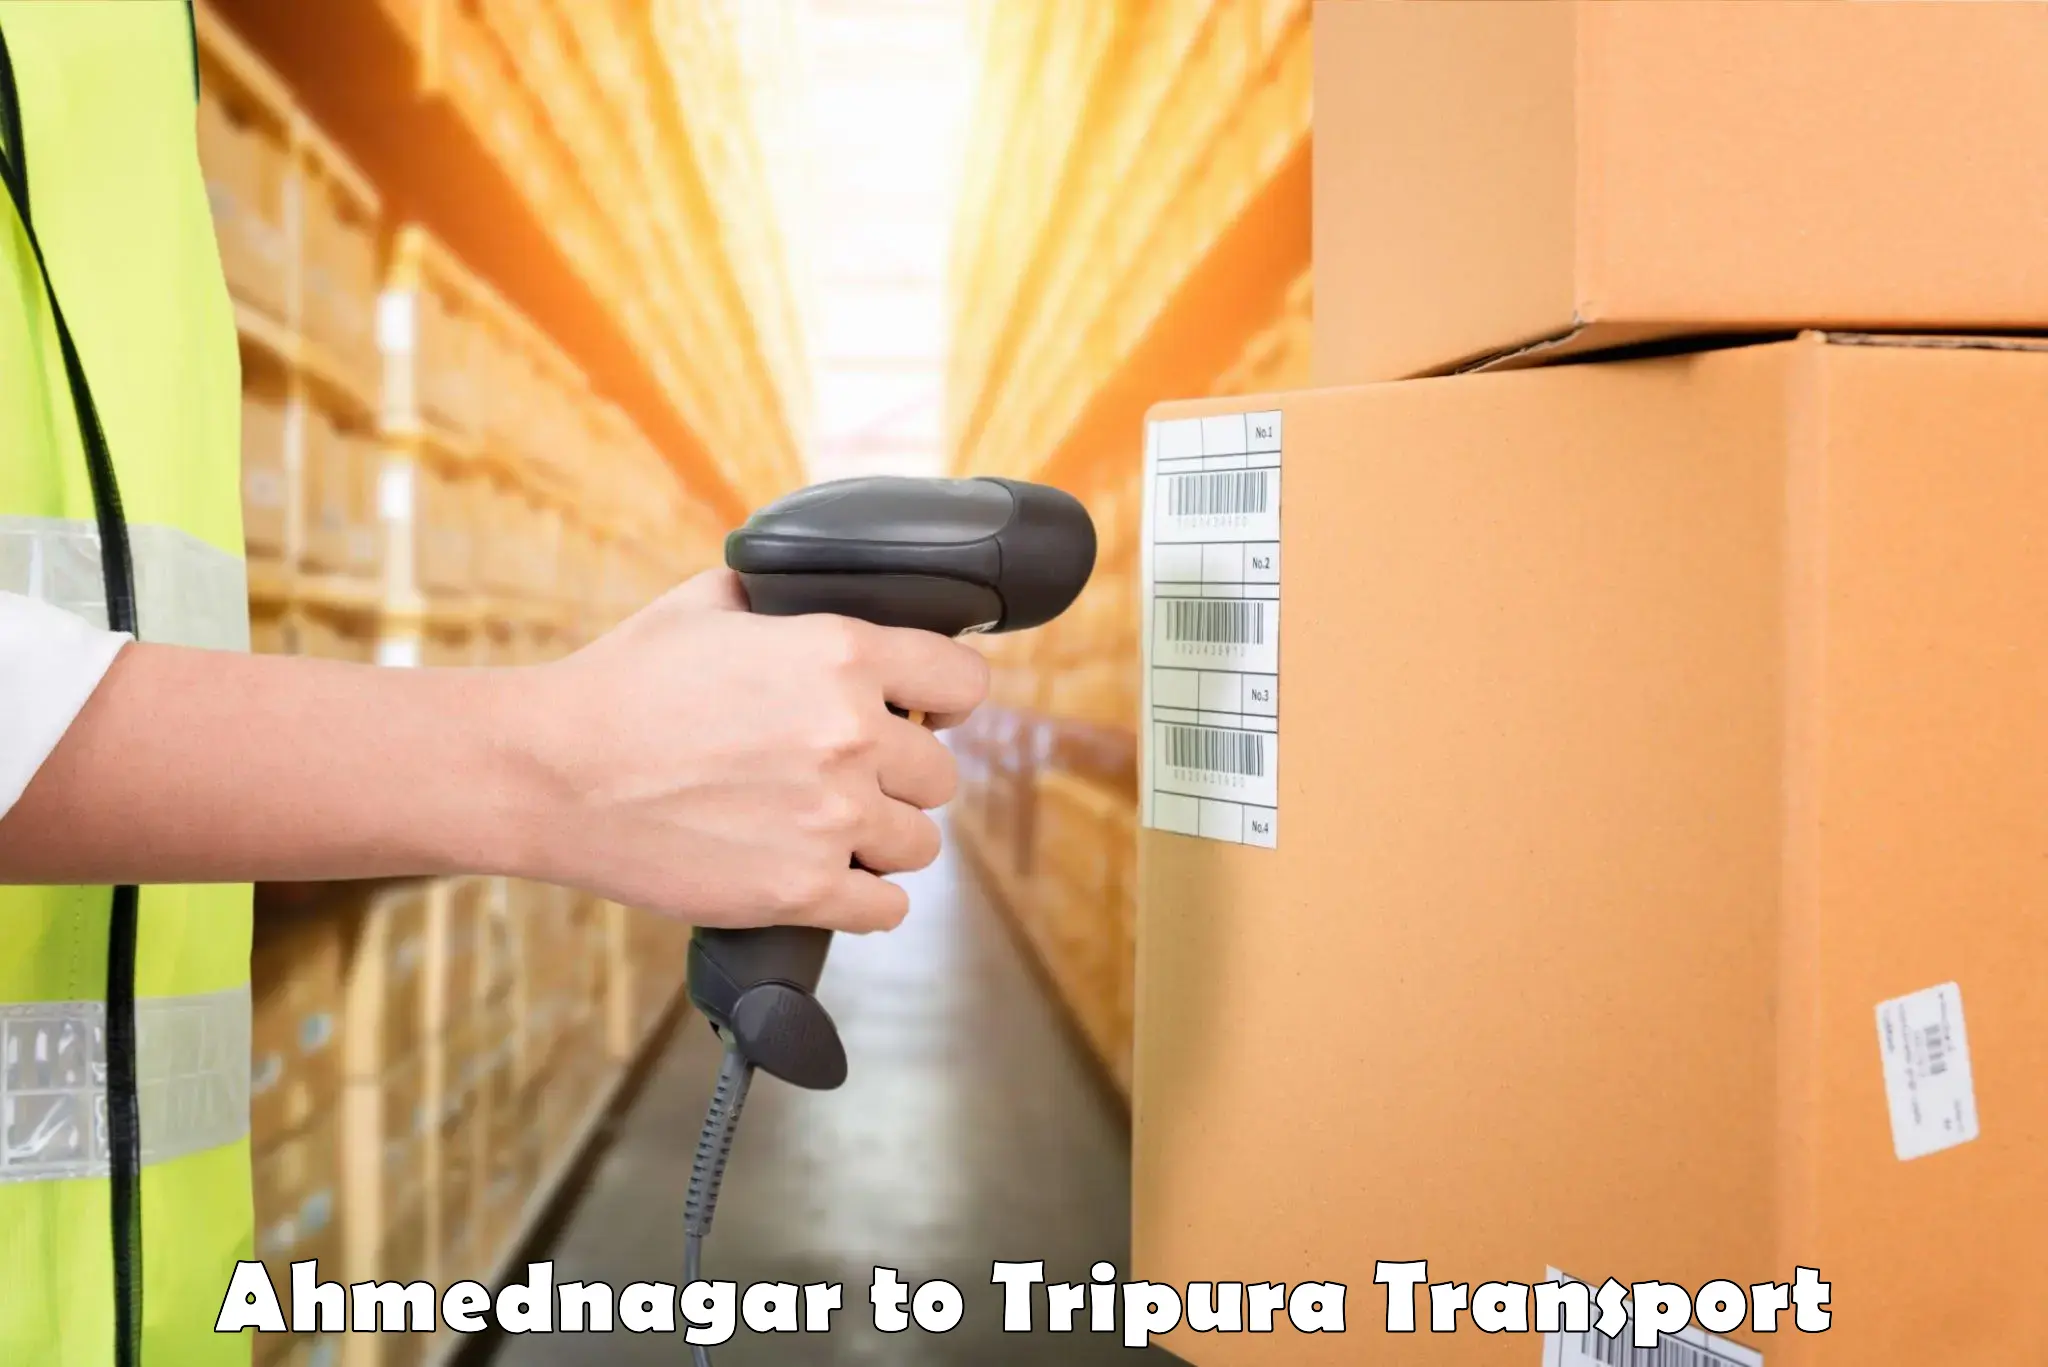 India truck logistics services in Ahmednagar to Dharmanagar